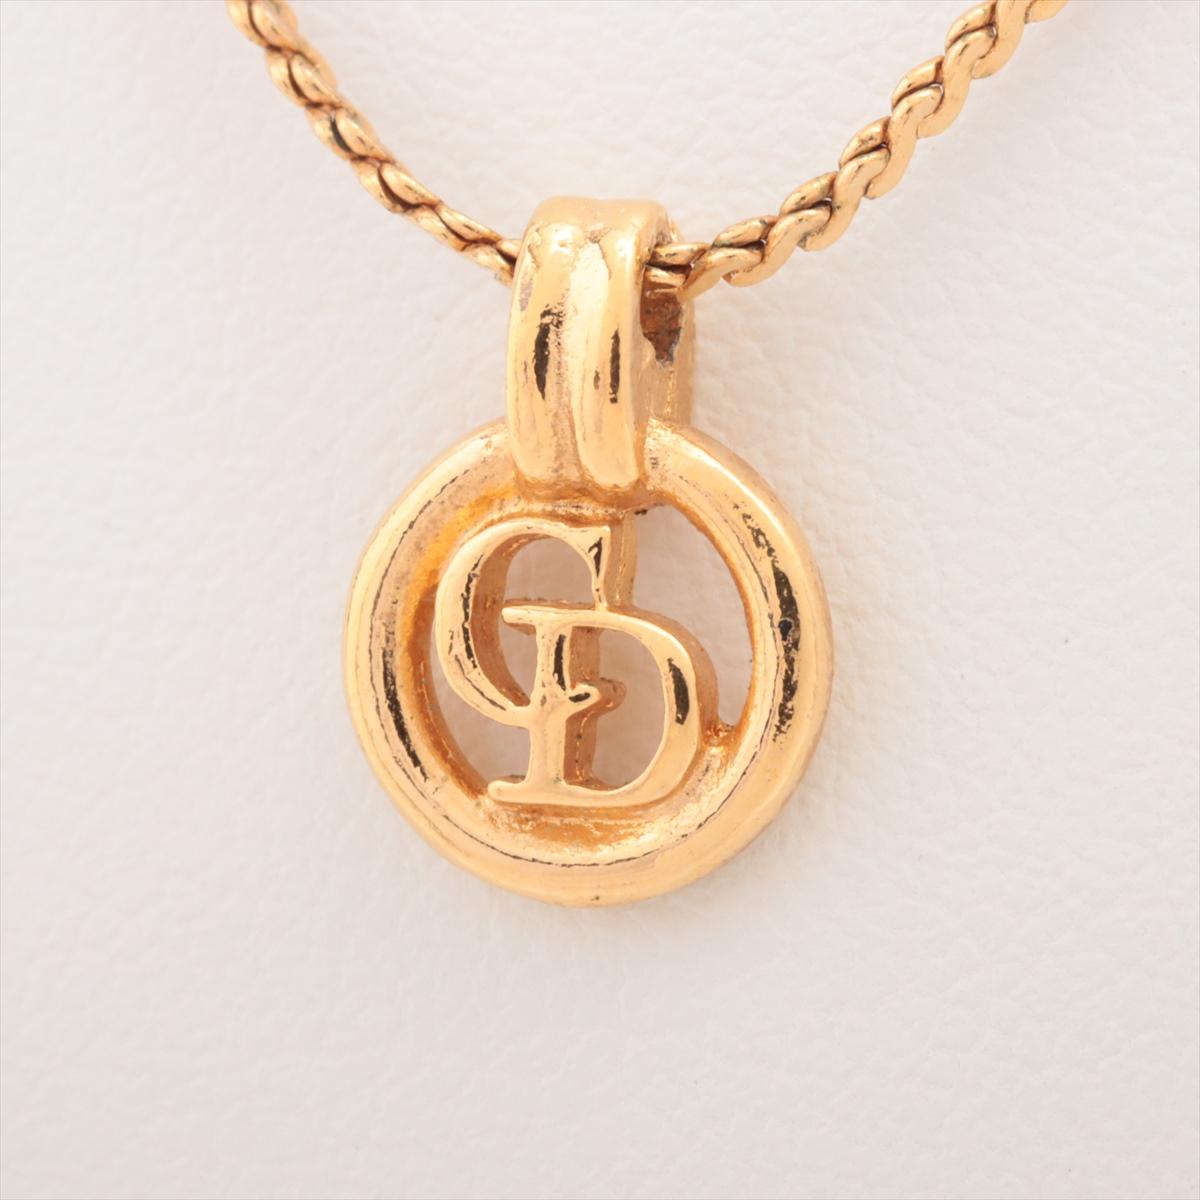 Die runde Halskette mit CD-Logo von Christian Dior aus strahlendem Gold ist ein Beweis für das Engagement von Dior für zeitlose Eleganz und Luxus. Die exquisite Halskette besteht aus einem runden Anhänger mit dem ikonischen CD-Logo, das den